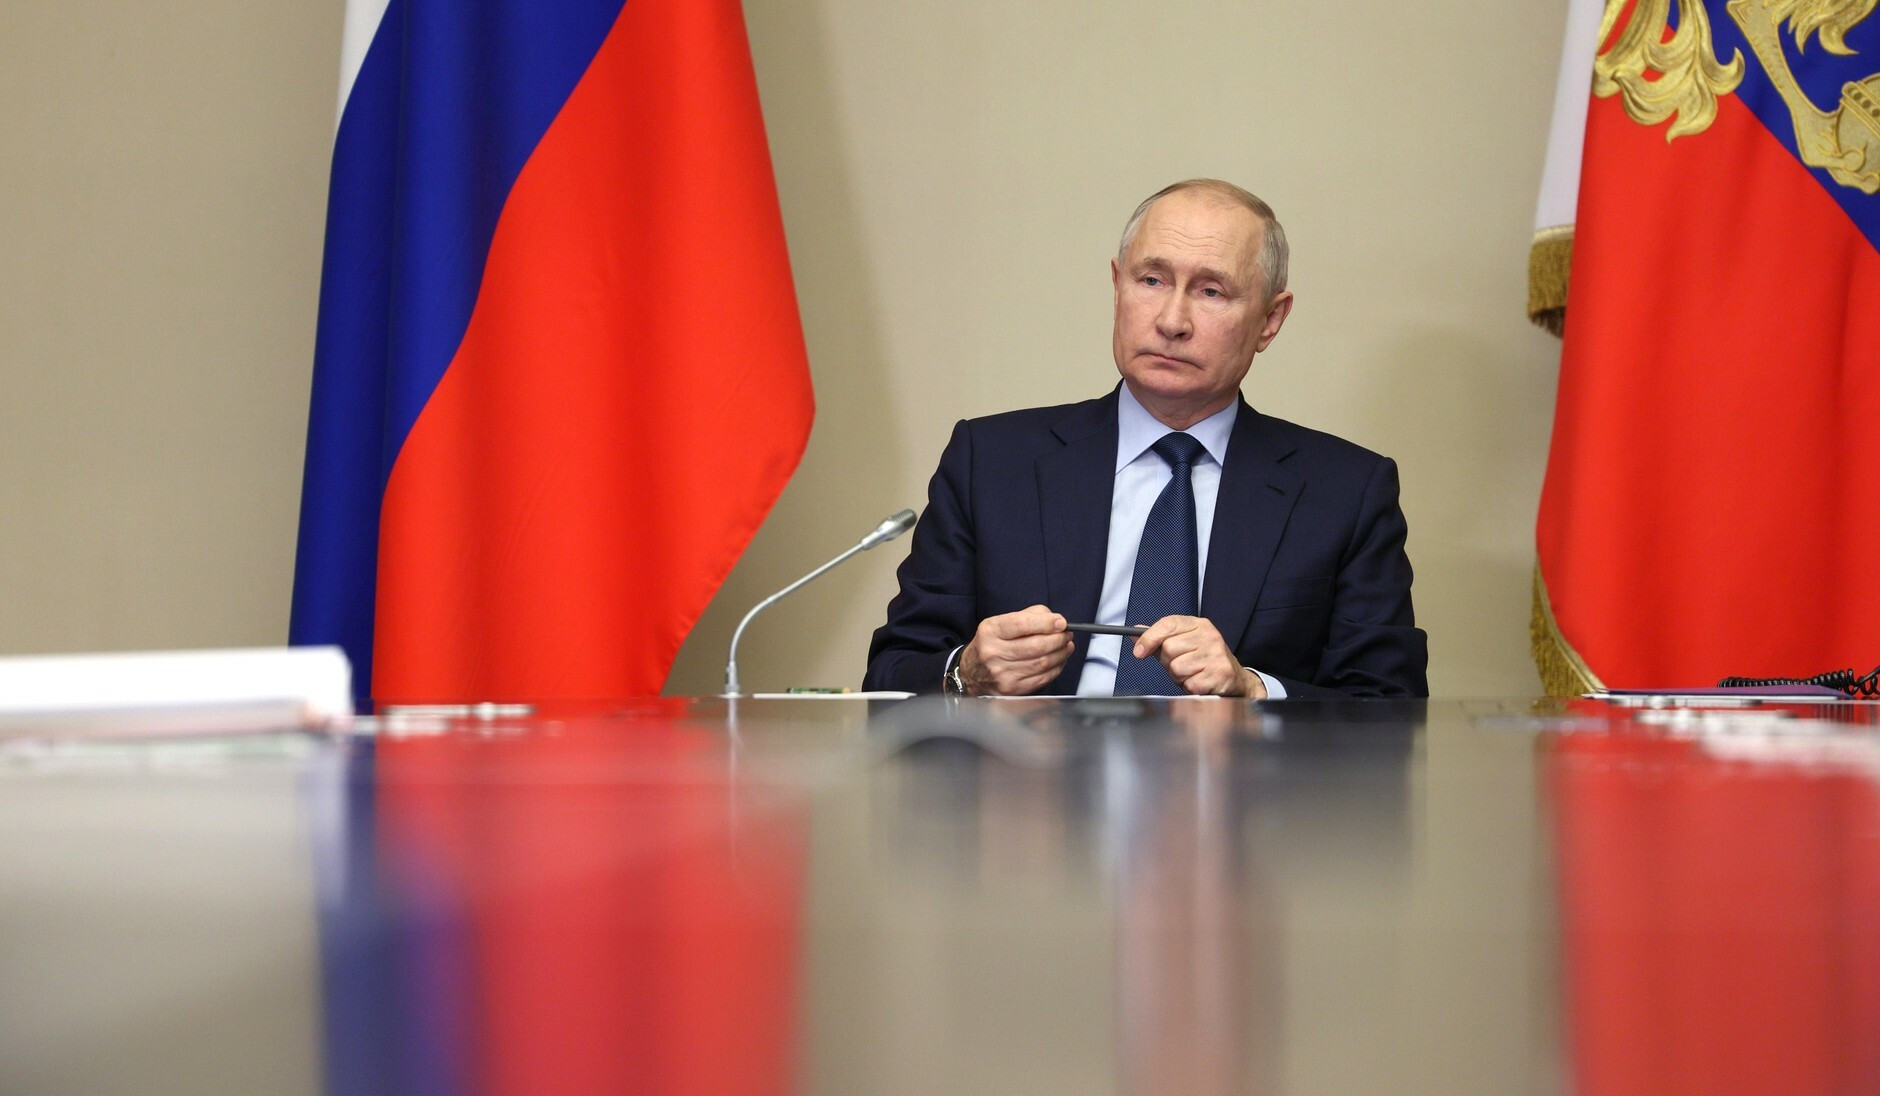 Все стороны согласны с проектом строительства газопровода из России в Китай через Монголию: Путин